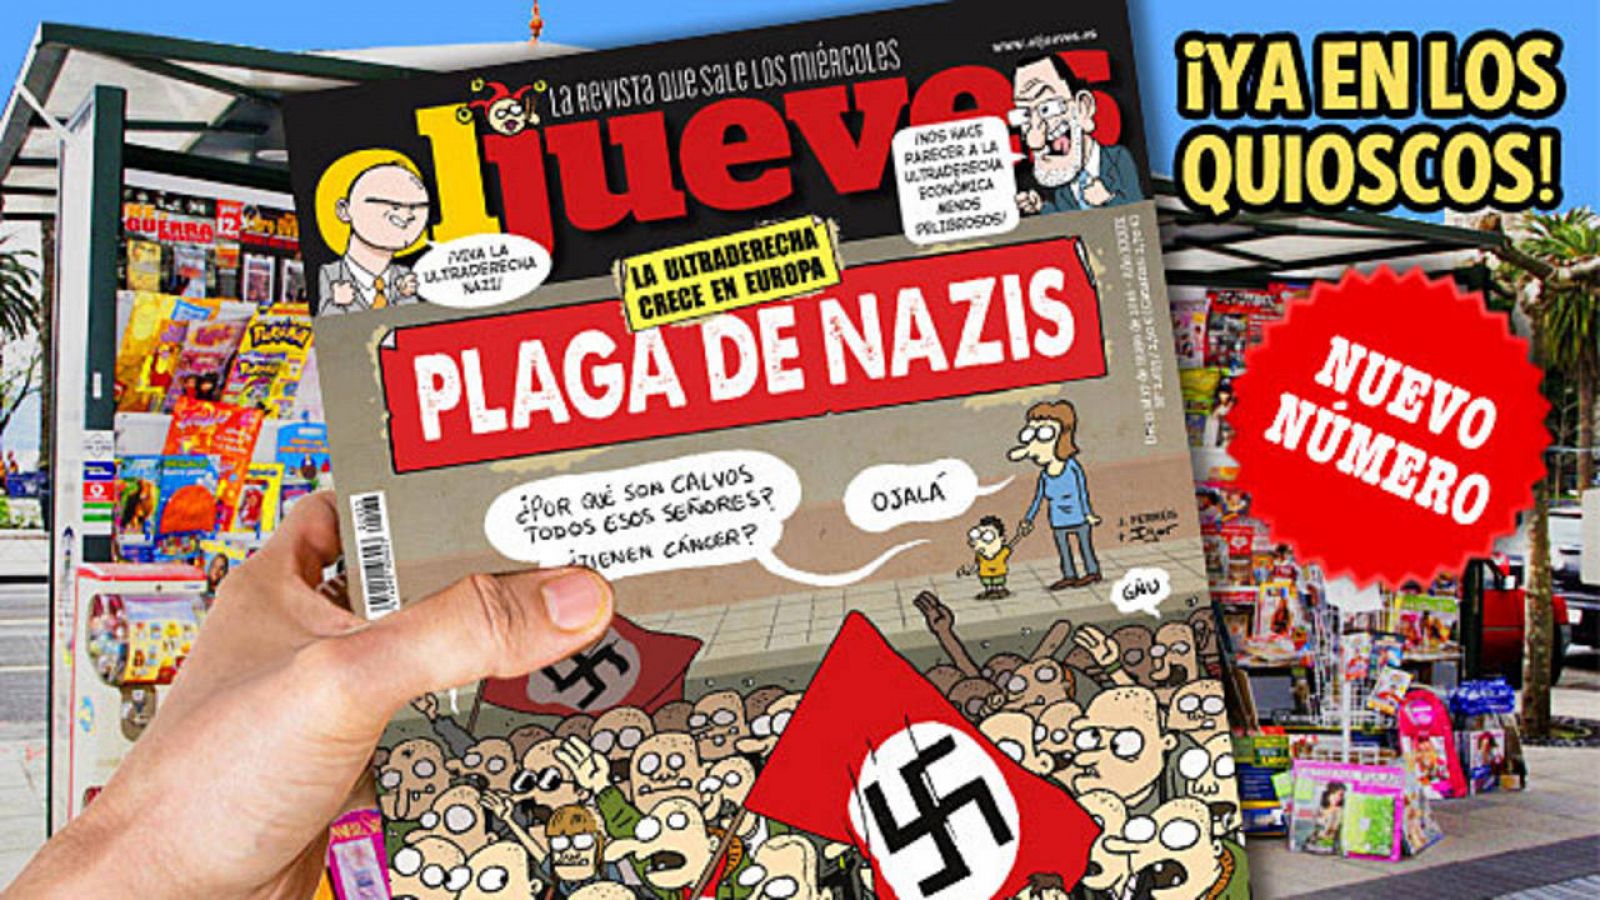 Imagen de la nueva portada de 'El Jueves' dedicada a los neonazis